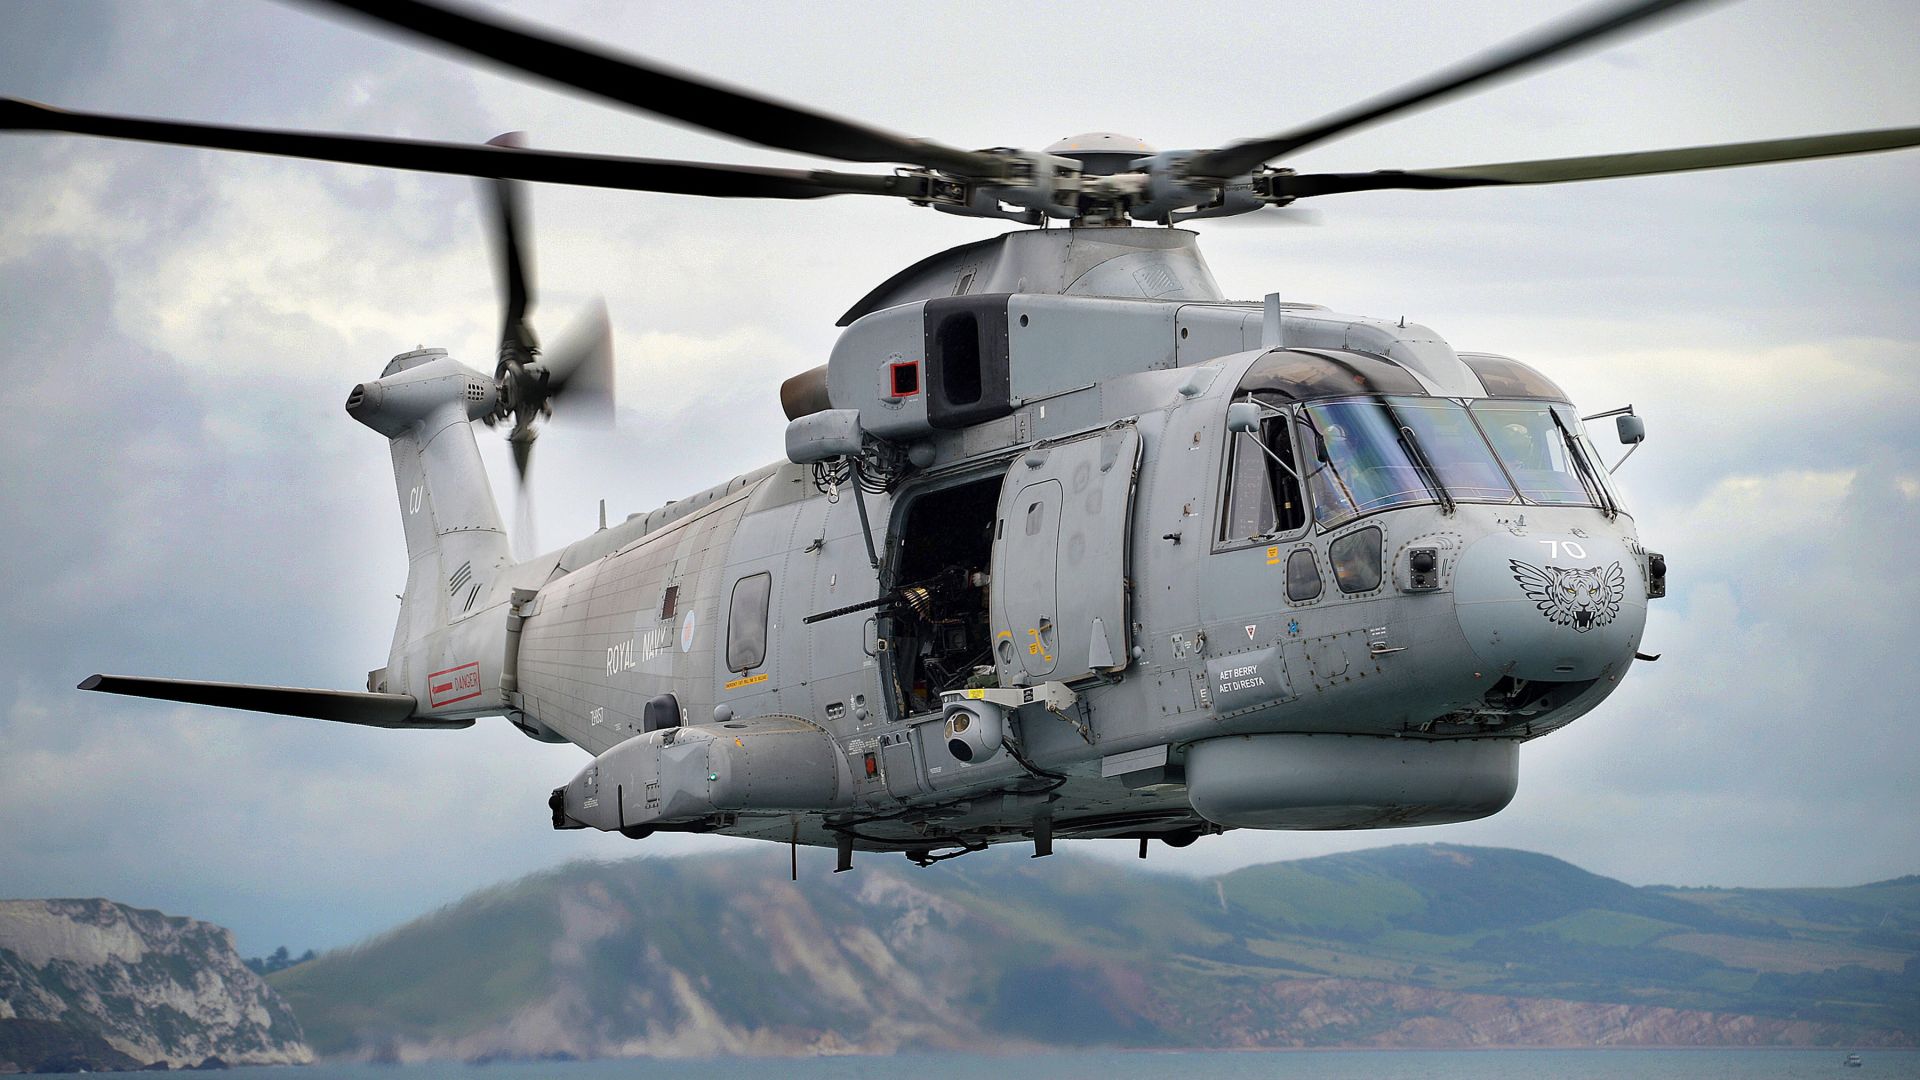 ЕН-101 Мерлин, военно-транспортный вертолёт, ВМС Италии, EH-101 Merlin, transport helicopter, Italian Navy (horizontal)